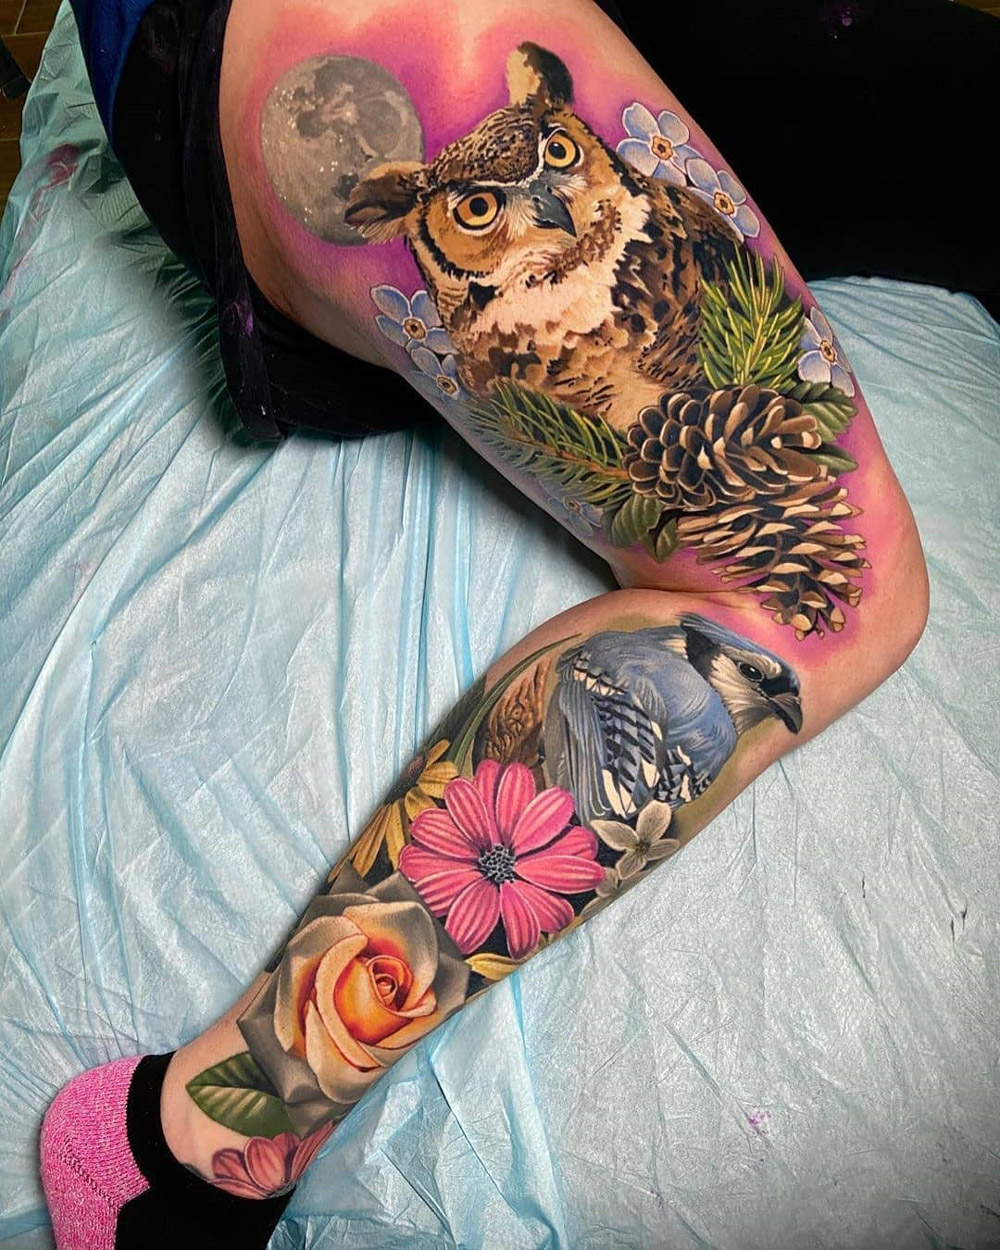 Tatuagem de perna cheia de coruja & Jay azul